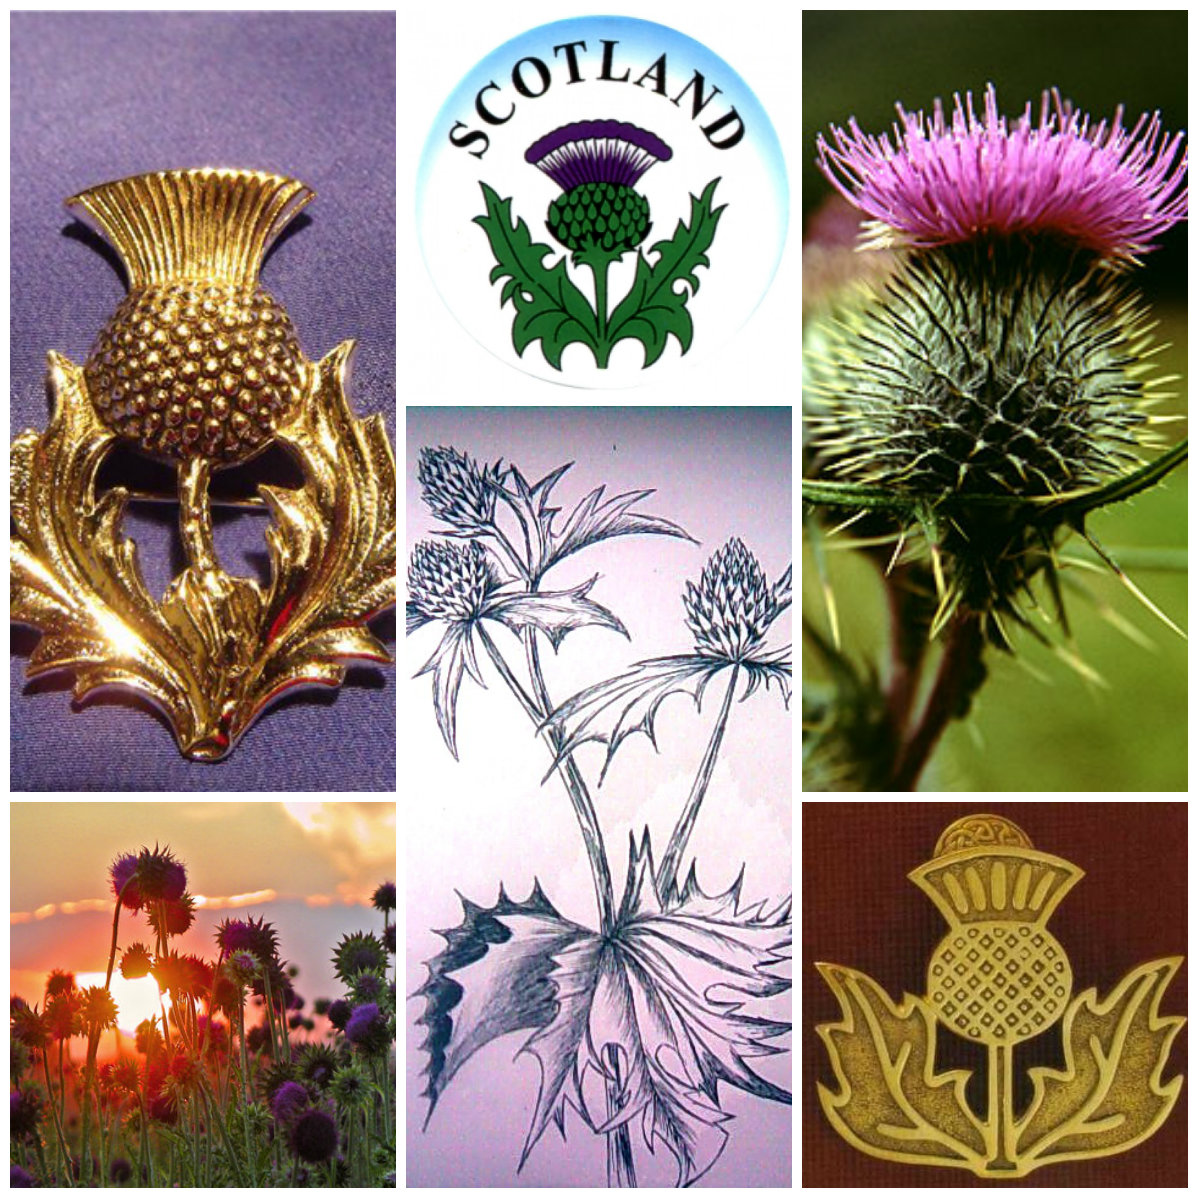 Национальный цветок Шотландии чертополох. Национальный символ Шотландии чертополох. Чертополох символ Шотландии. Цветок чертополоха символ Шотландии.